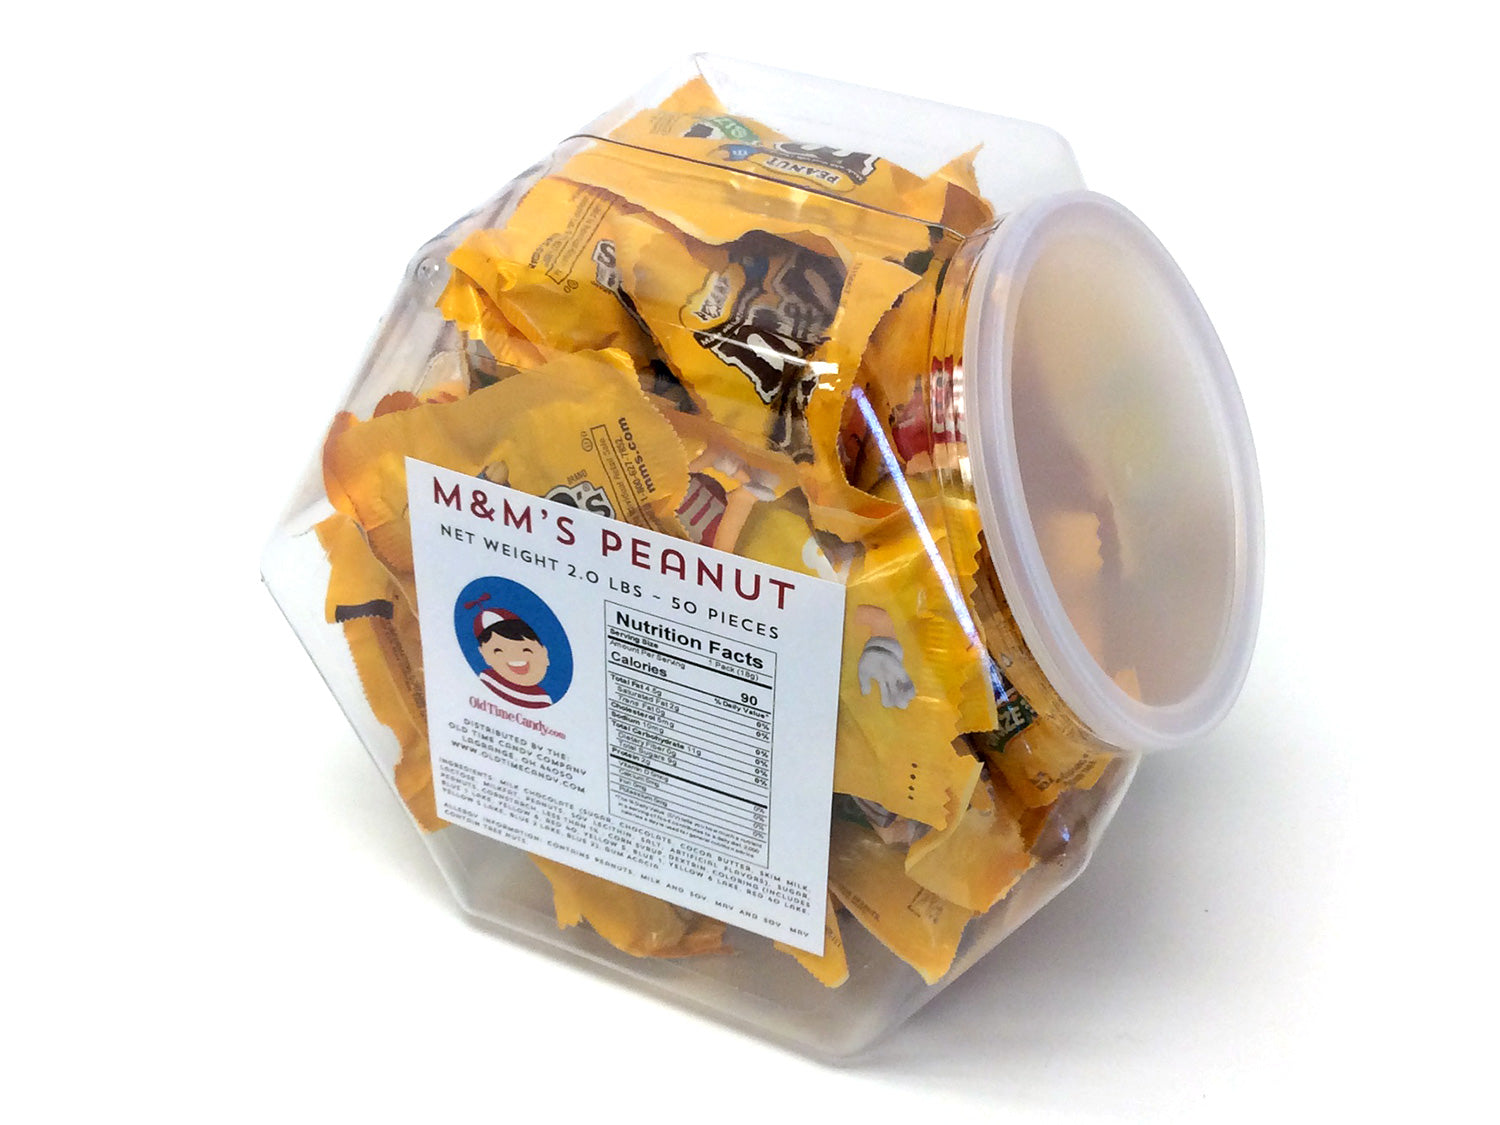 M&M's Peanut Fun Size Bag, 11.23 Oz - Pick 'n Save